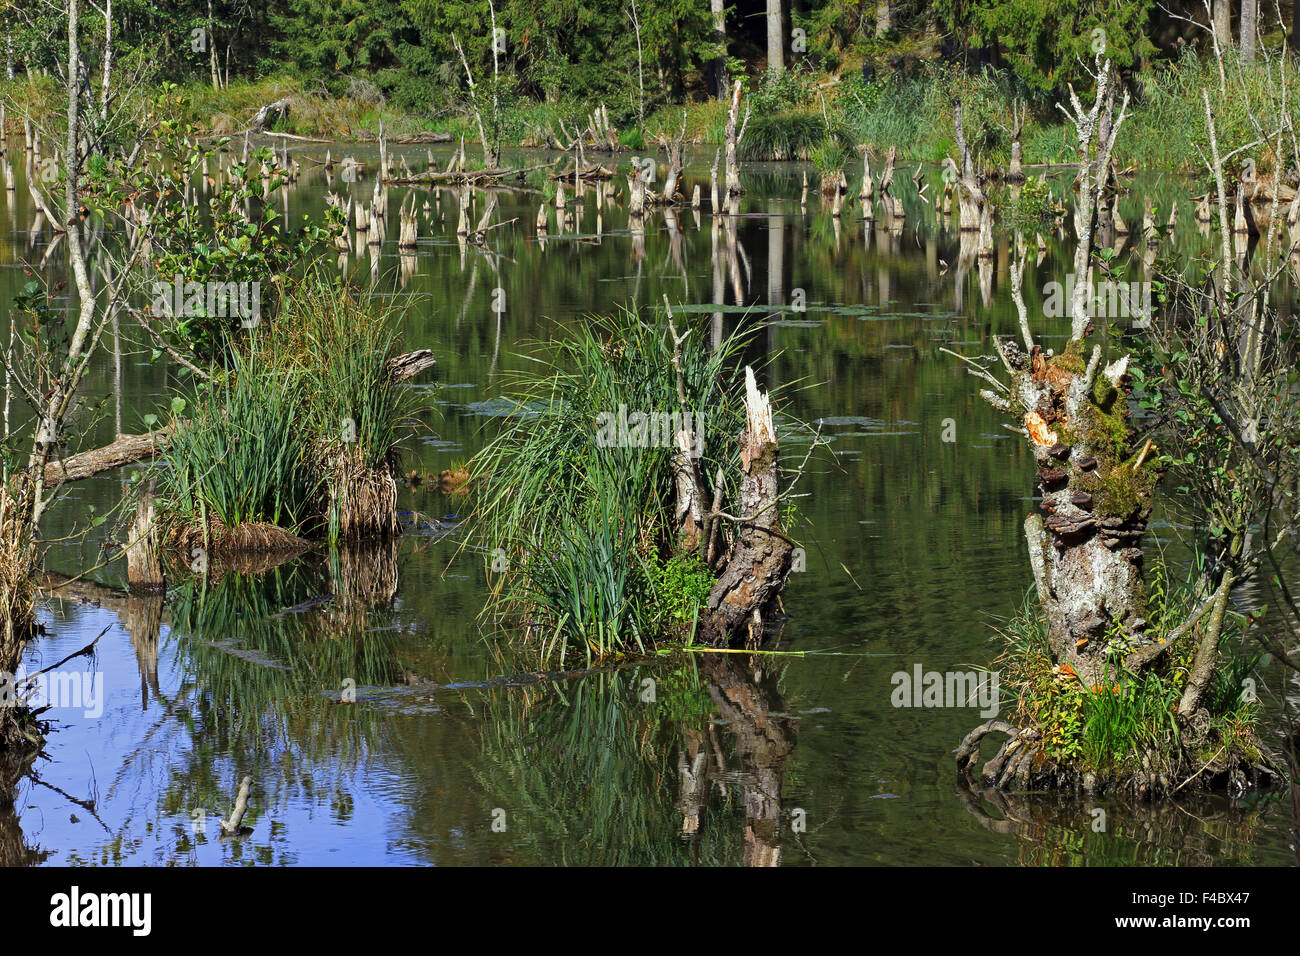 Beaver pond in Bavaria, Germany Stock Photo